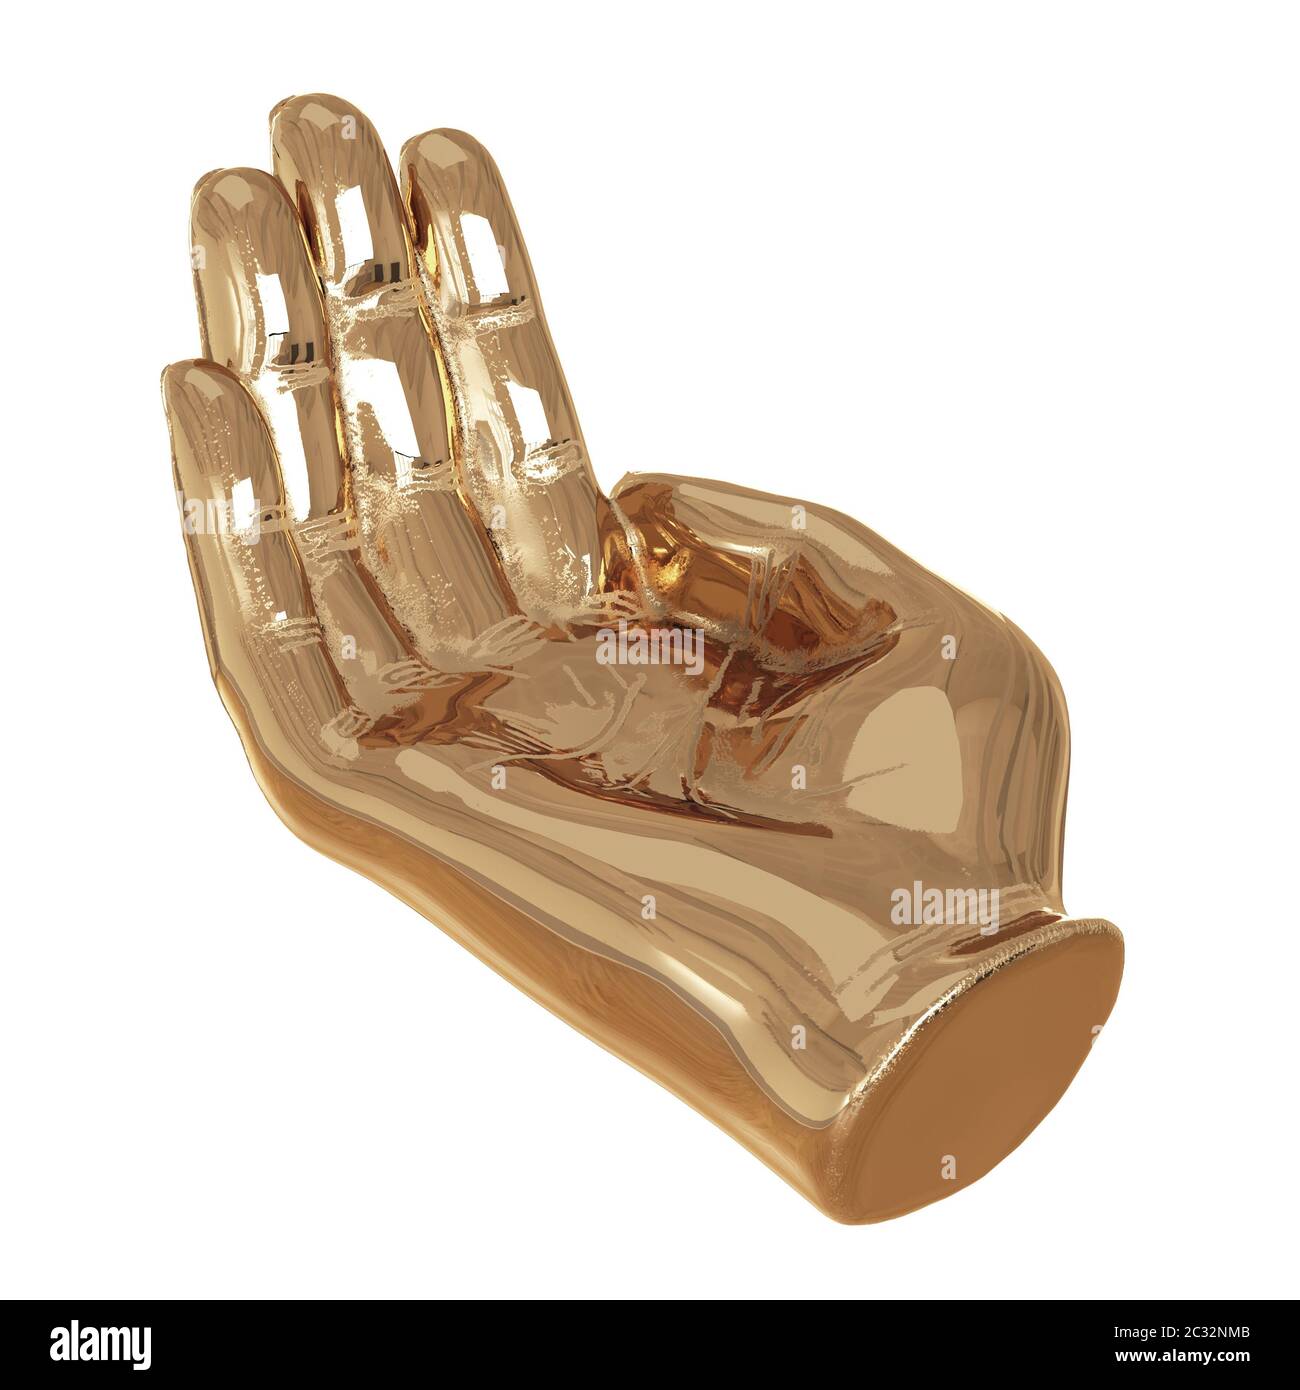 Main dorée décorative avec doigts légèrement pliés paume vers le haut sur fond blanc. rendu 3d Banque D'Images